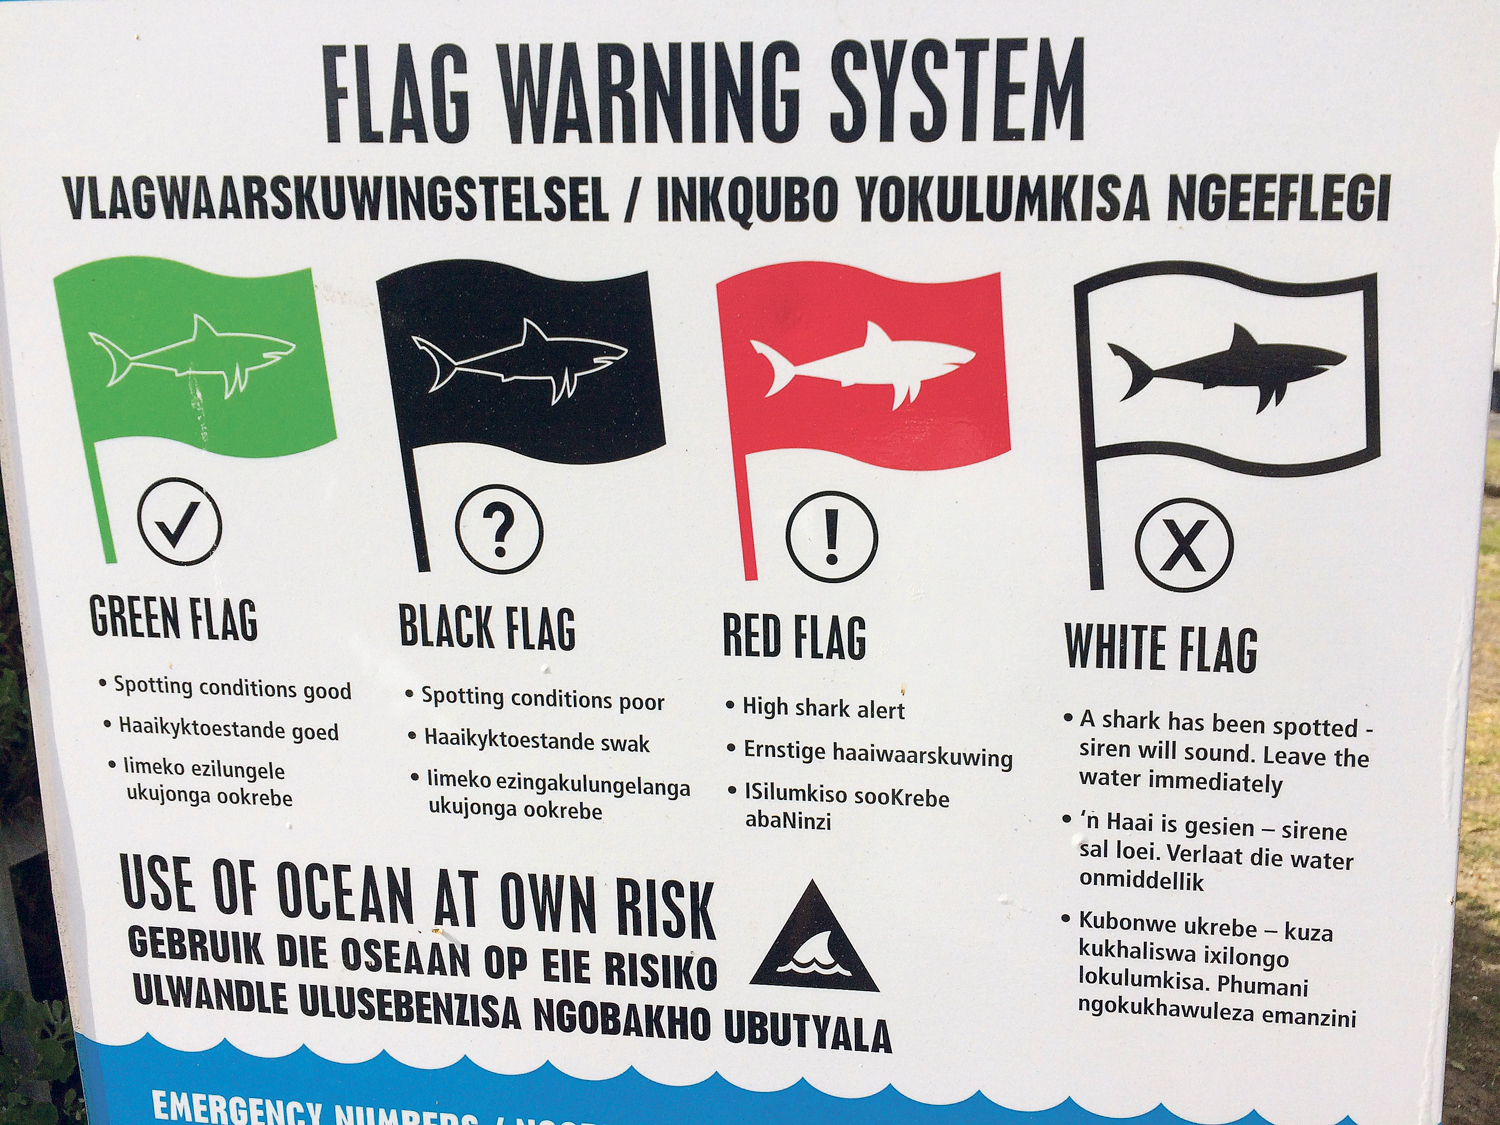 Hai-Warnsystem: Weiße Fahne bedeutet - Hai gesichtet. 